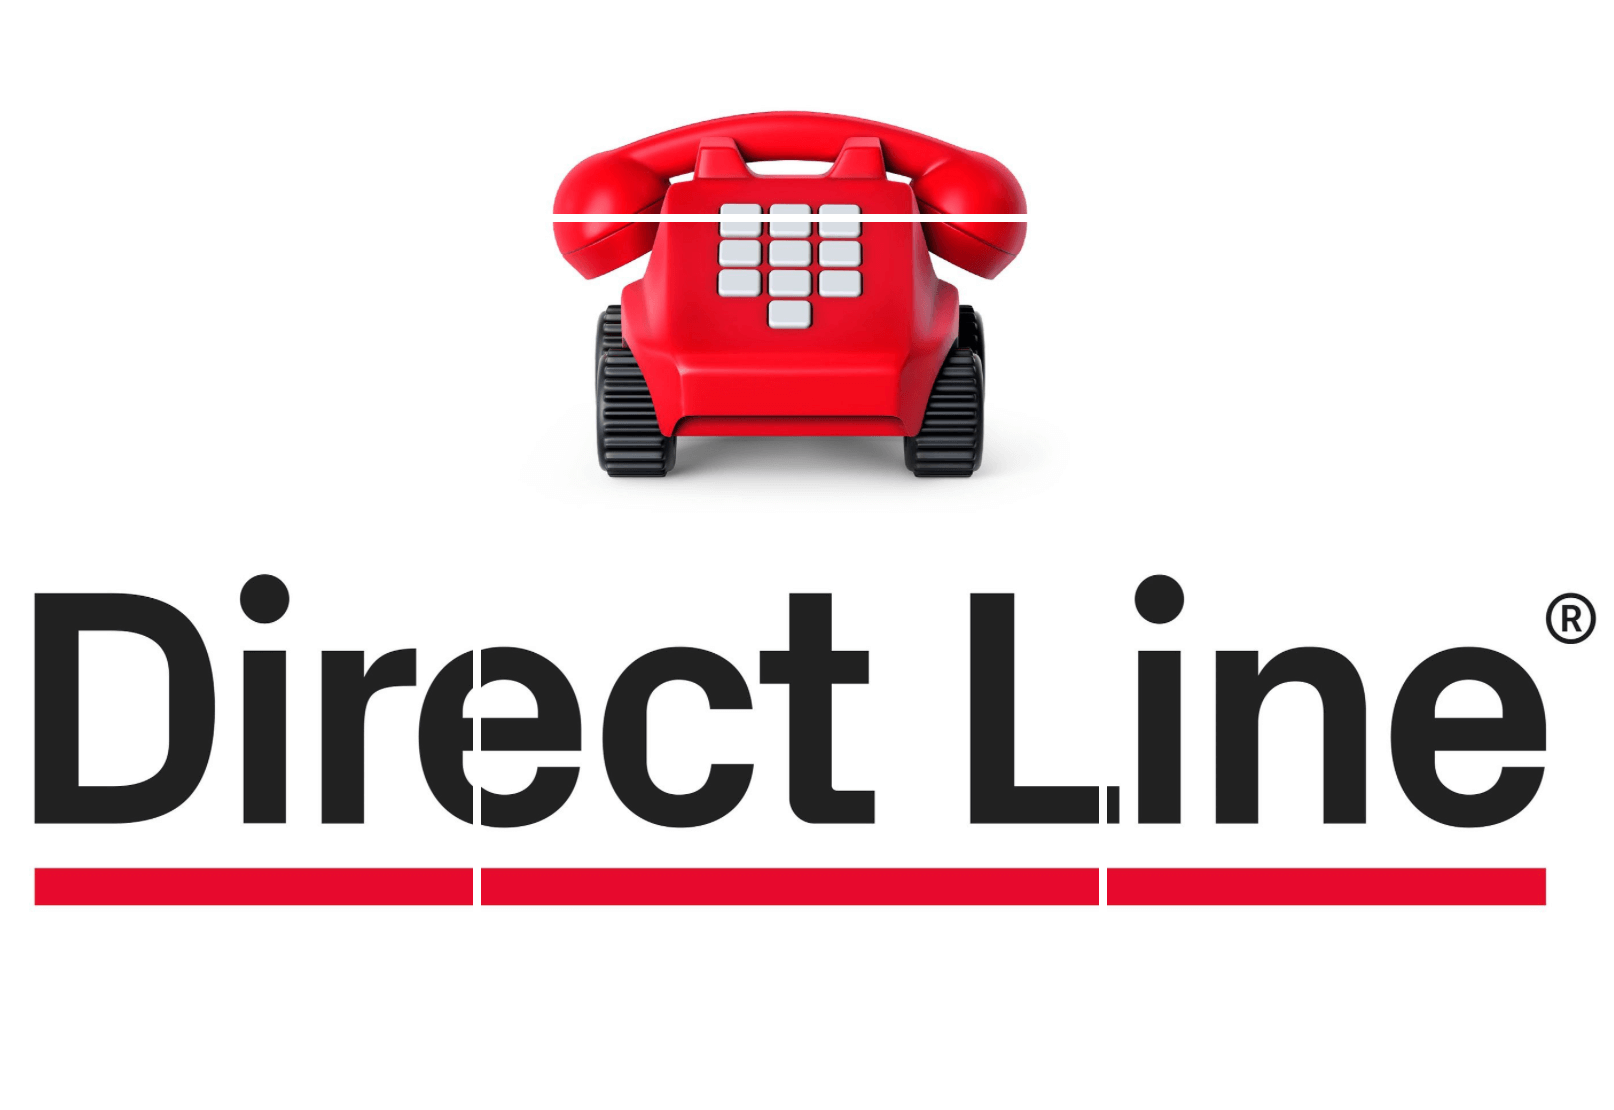 Direct Line rejeita proposta de compra da Ageas